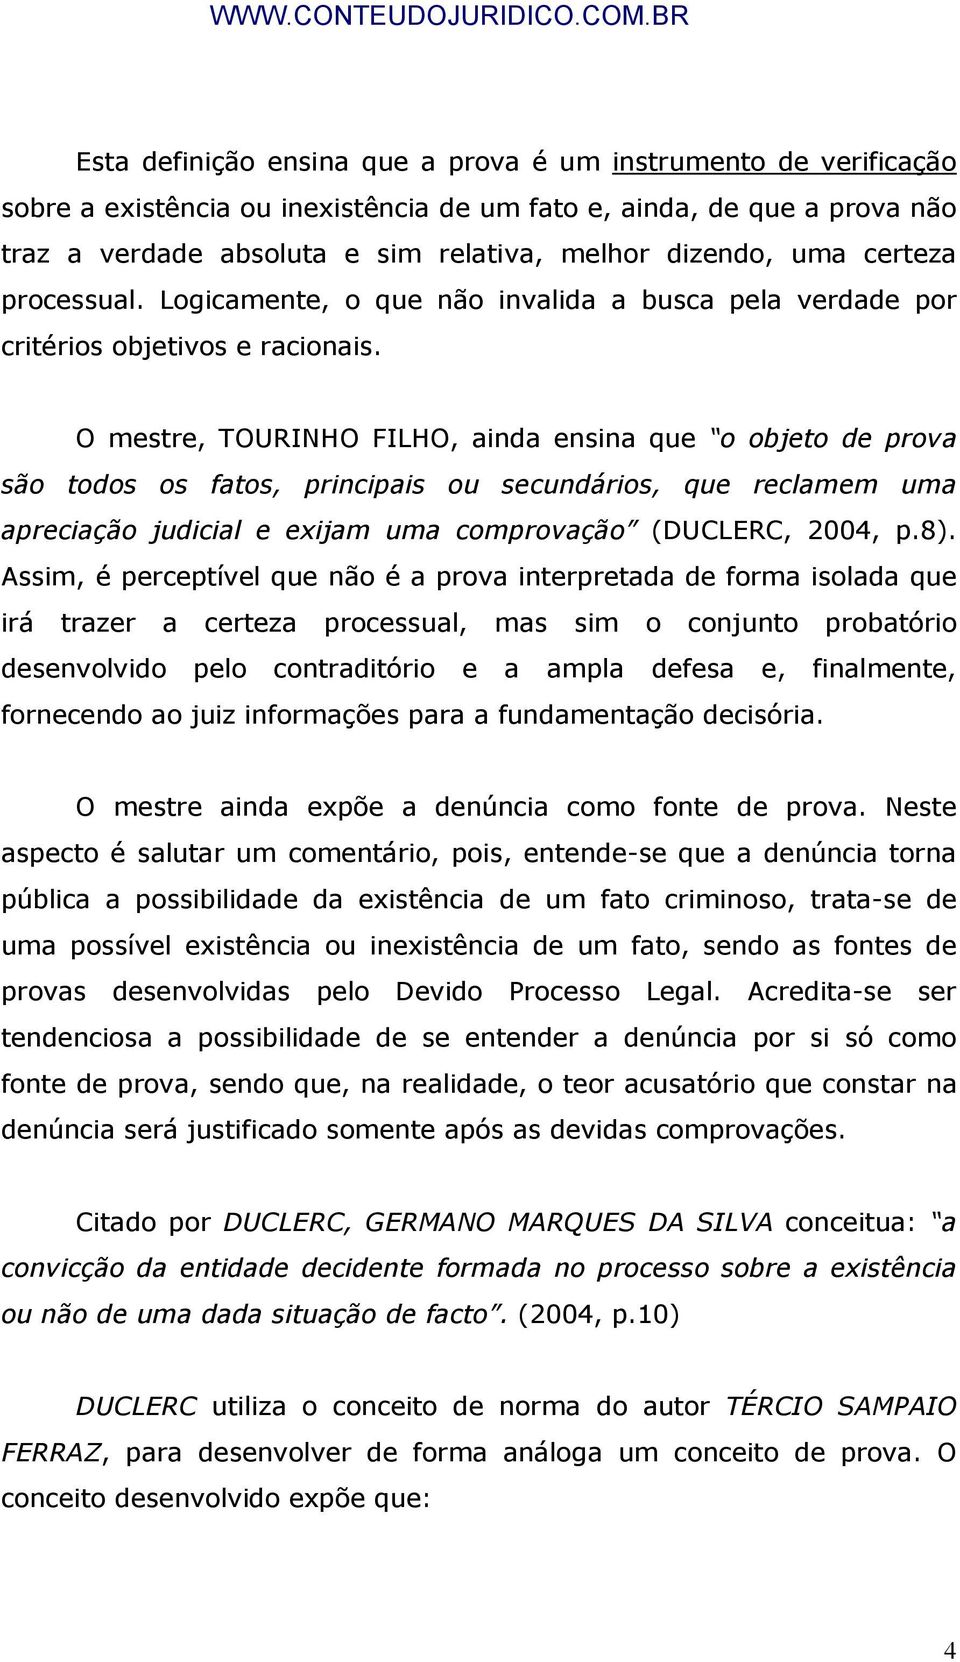 O mestre, TOURINHO FILHO, ainda ensina que o objeto de prova são todos os fatos, principais ou secundários, que reclamem uma apreciação judicial e exijam uma comprovação (DUCLERC, 2004, p.8).